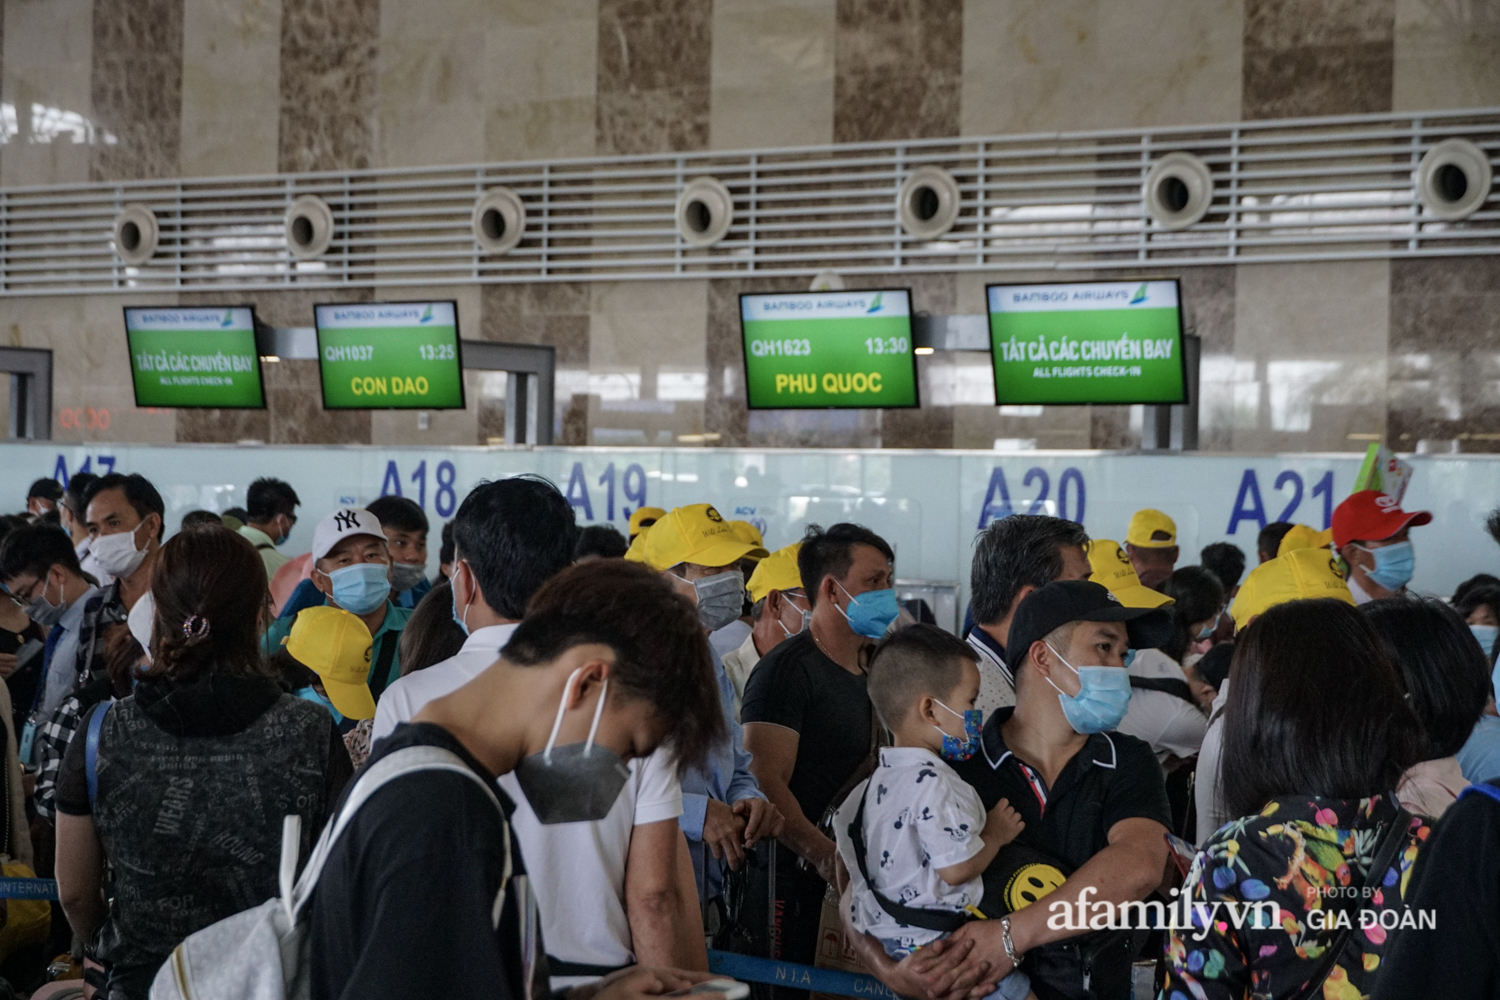 Hành khách xếp hàng dài chờ check-in tại sân bay Nội Bài - Ảnh 6.